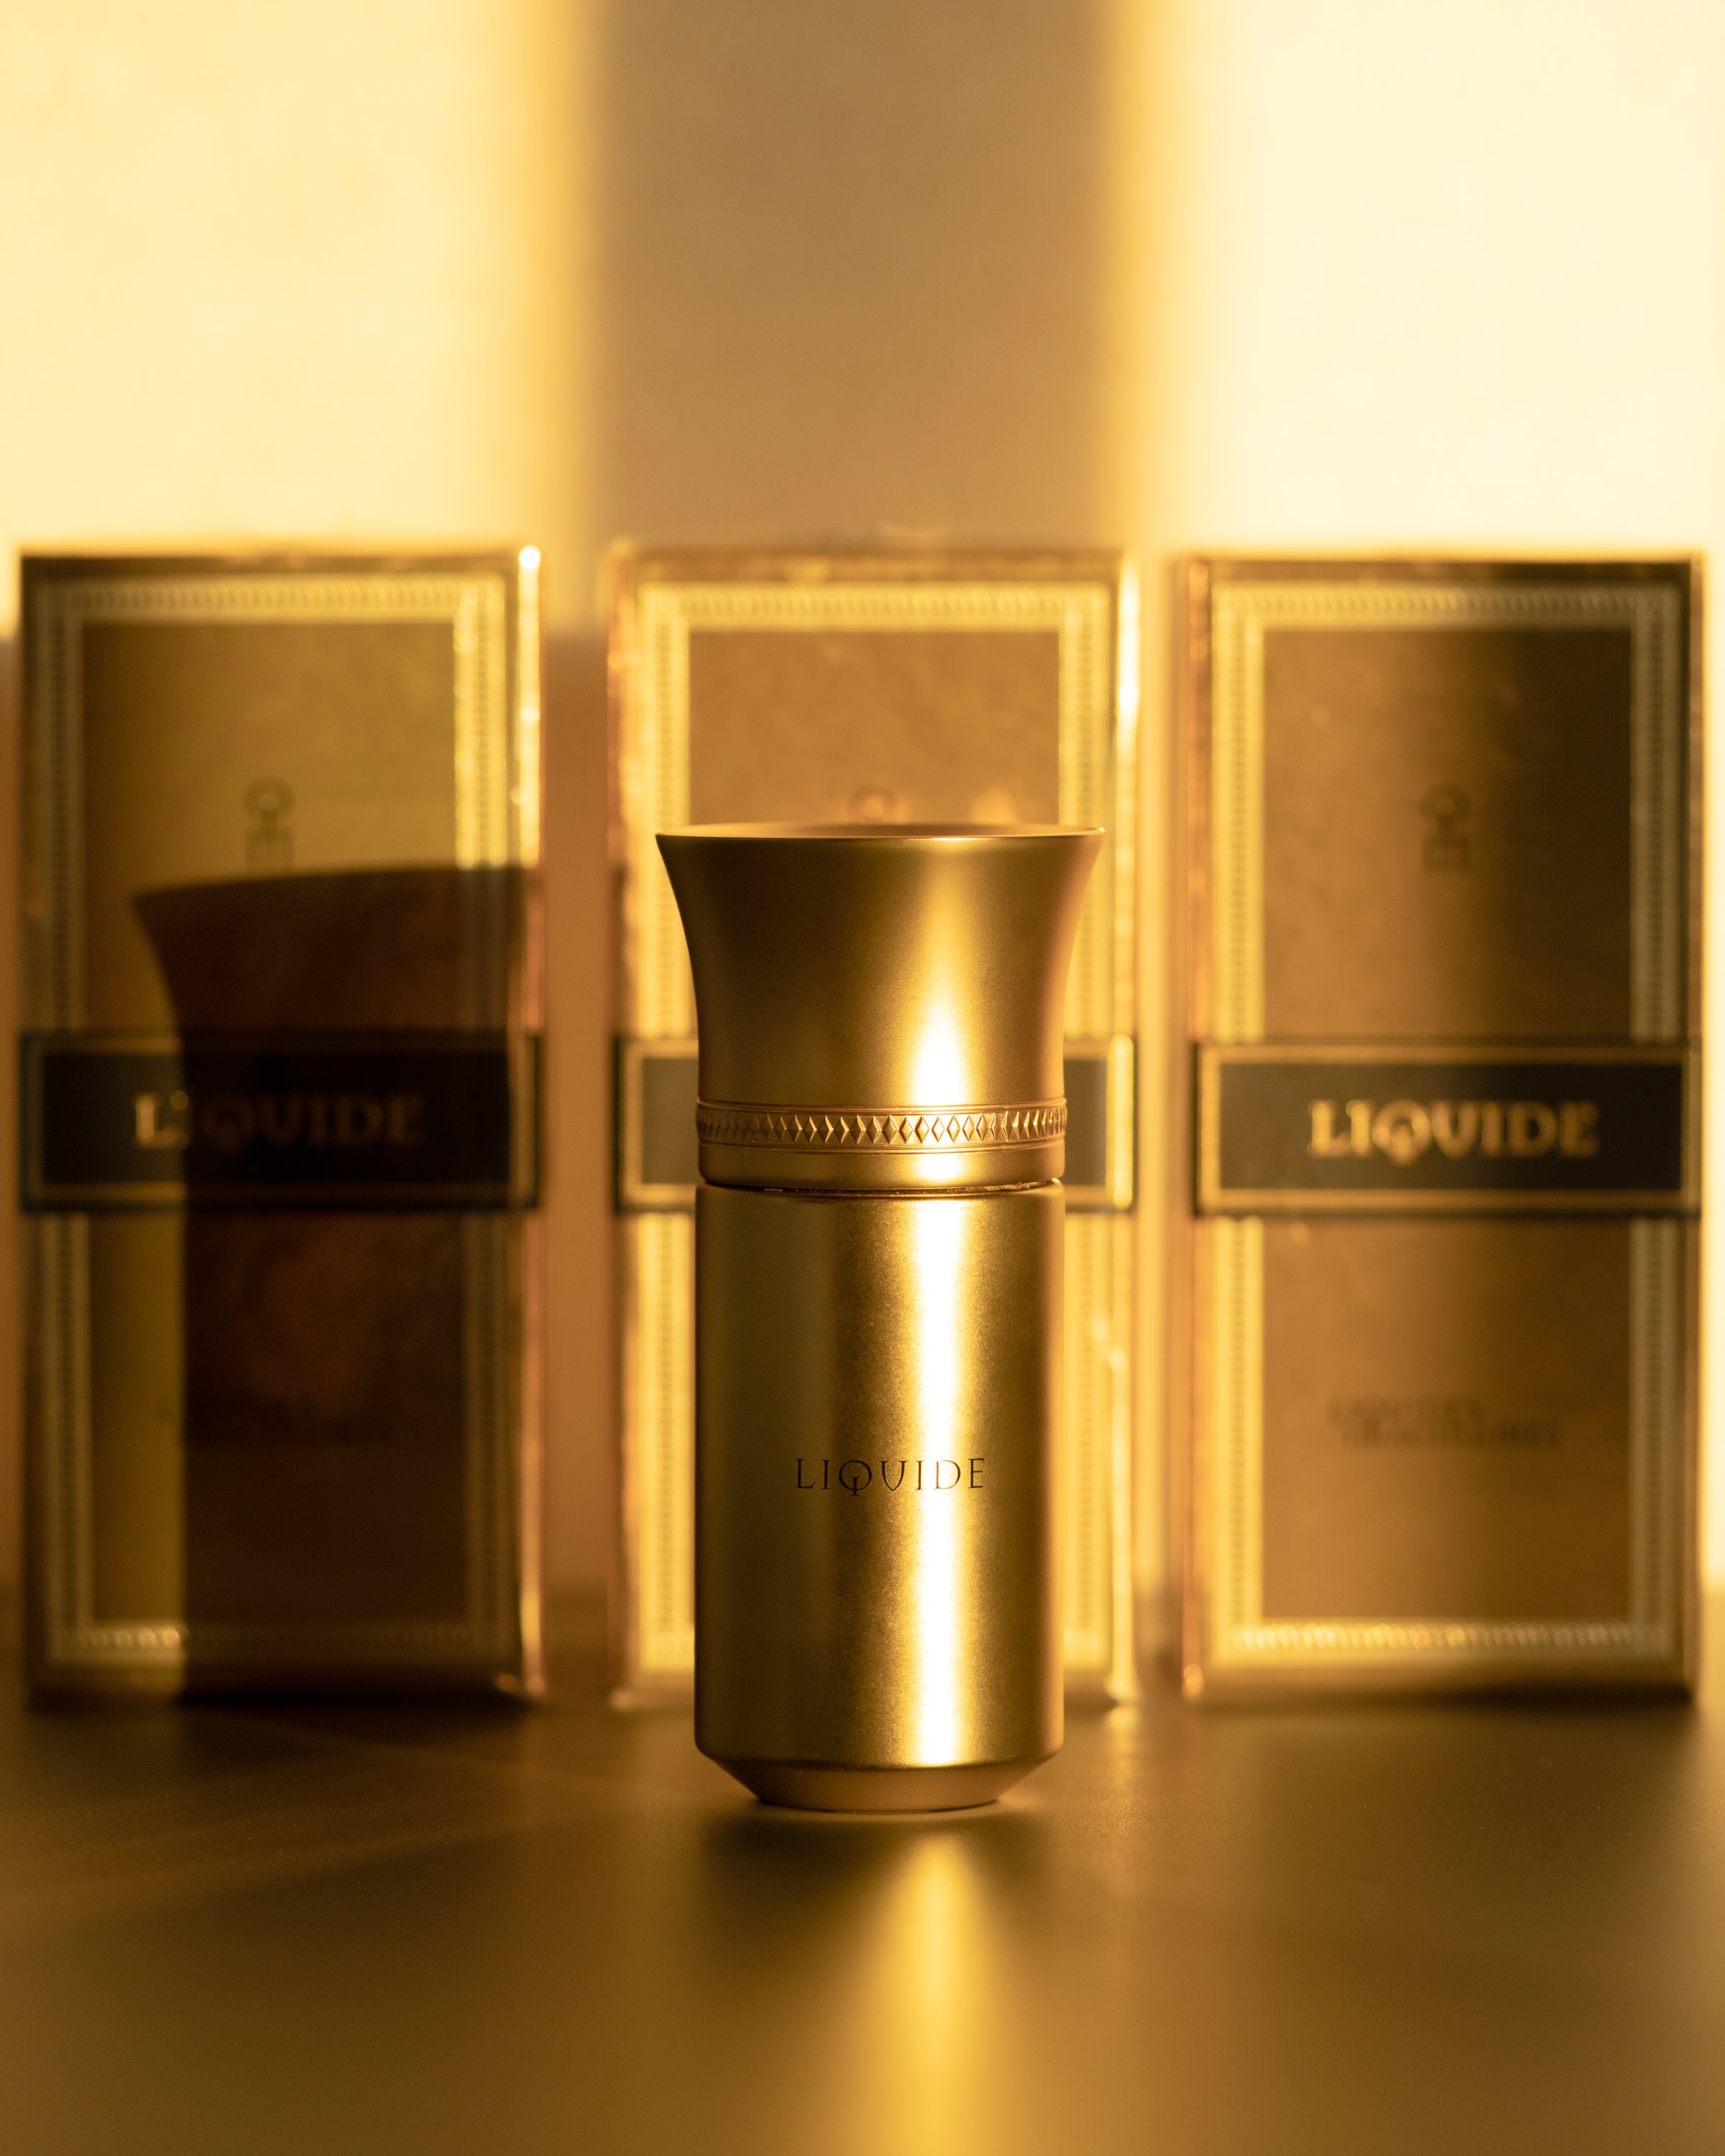 LIQUID GOLD 2022 リキッドゴールド Liquides Imaginaires リキッドイマジネール 香水 正規販売店 通販 ムエット 取り寄せ無料